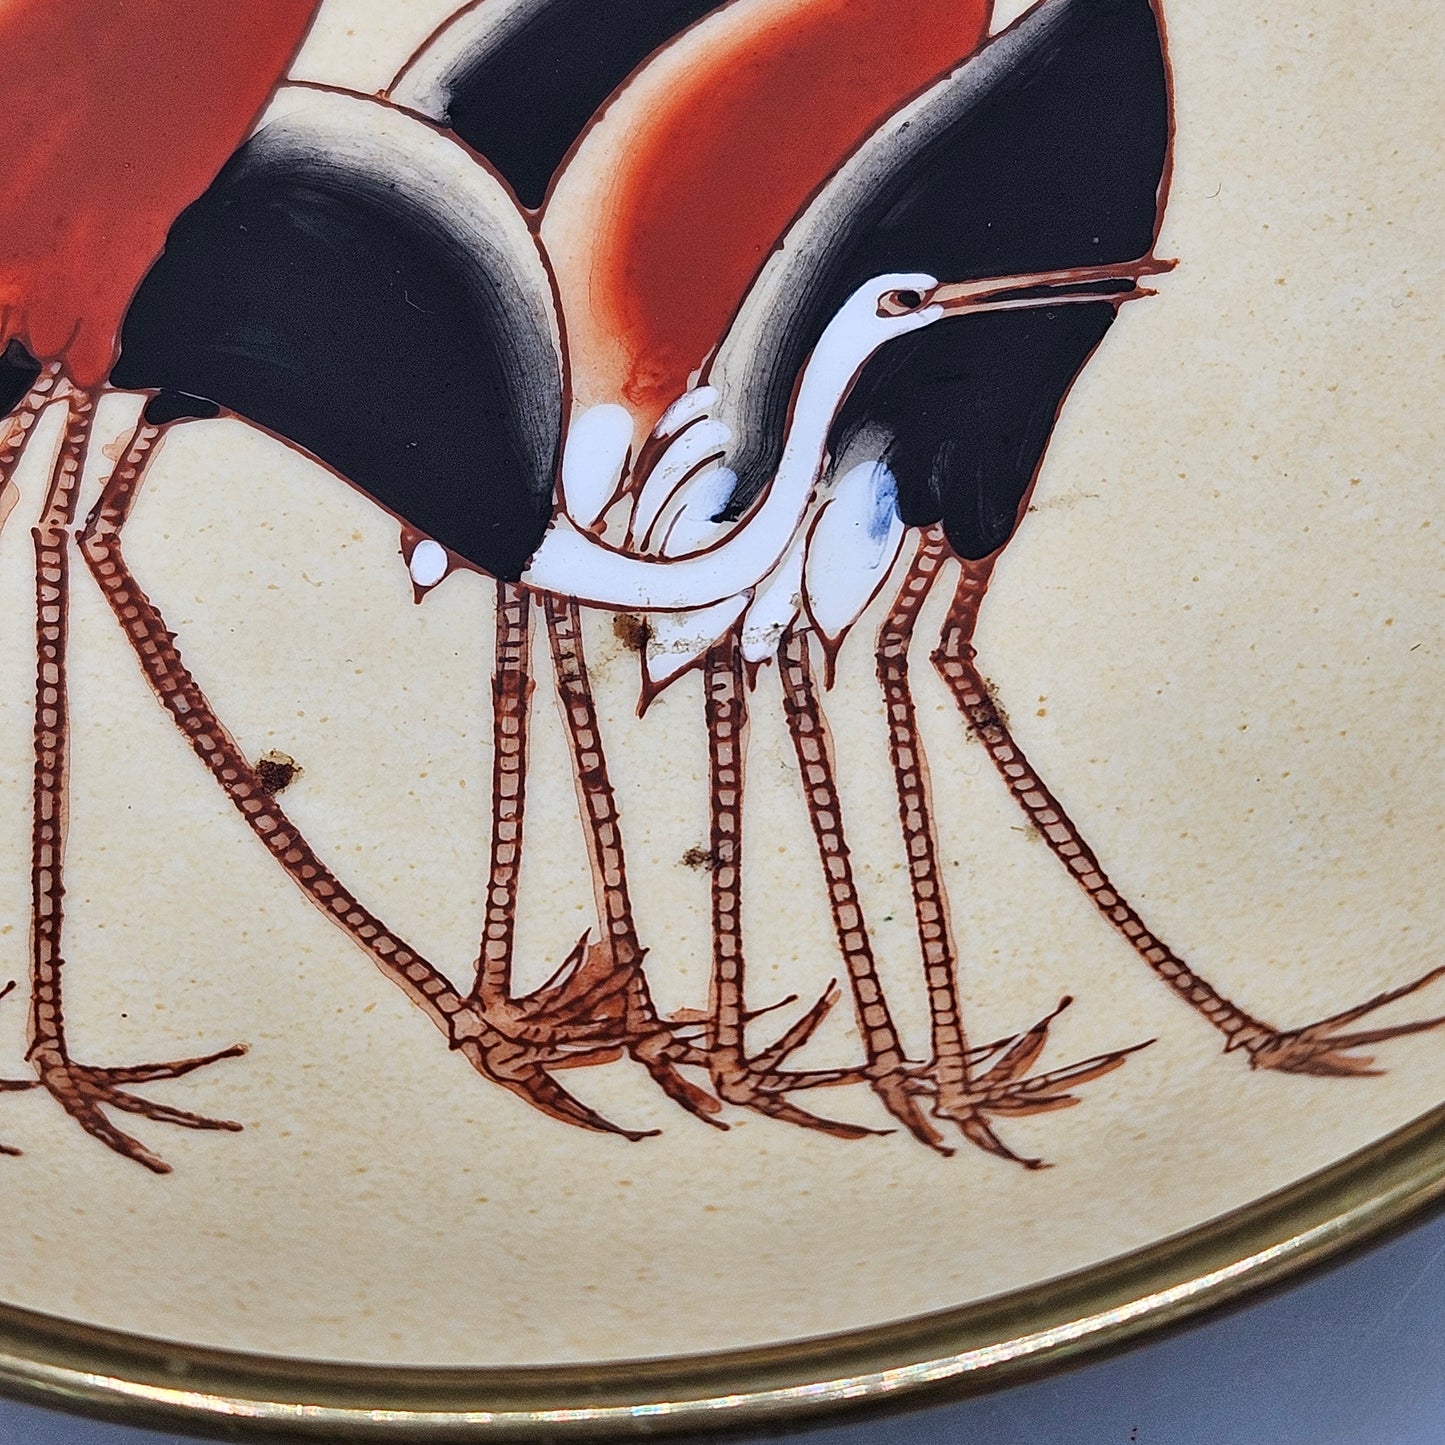 Vintage Ceramic Sakowitz Plate with Cranes Brass Collar